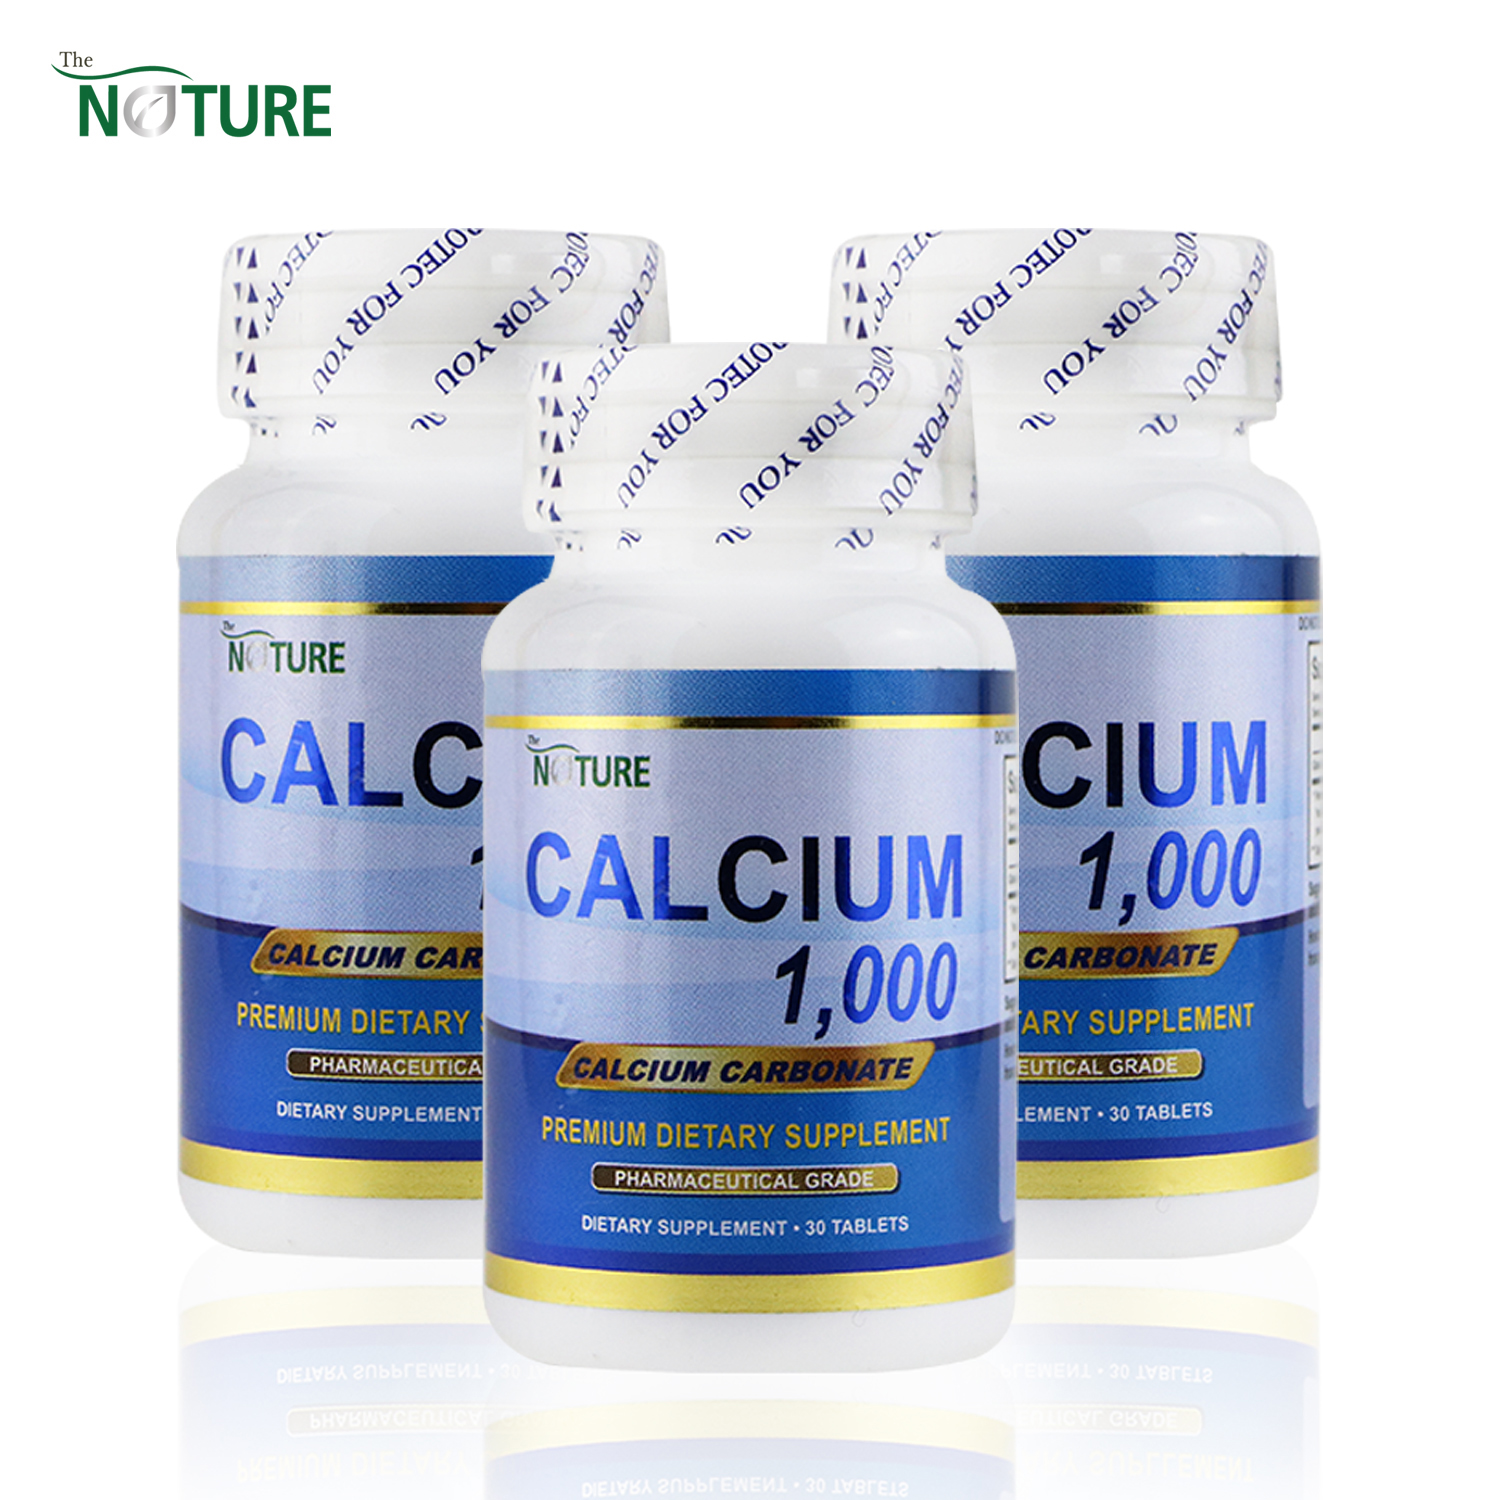 แคลเซียม ขายดีอันดับ 1 เดอะเนเจอร์  แคลเซียม คาร์บอเนต X 3 ขวด Calcium 1000 Calcium Carbonate THE NATURE บรรจุ 30 เม็ด